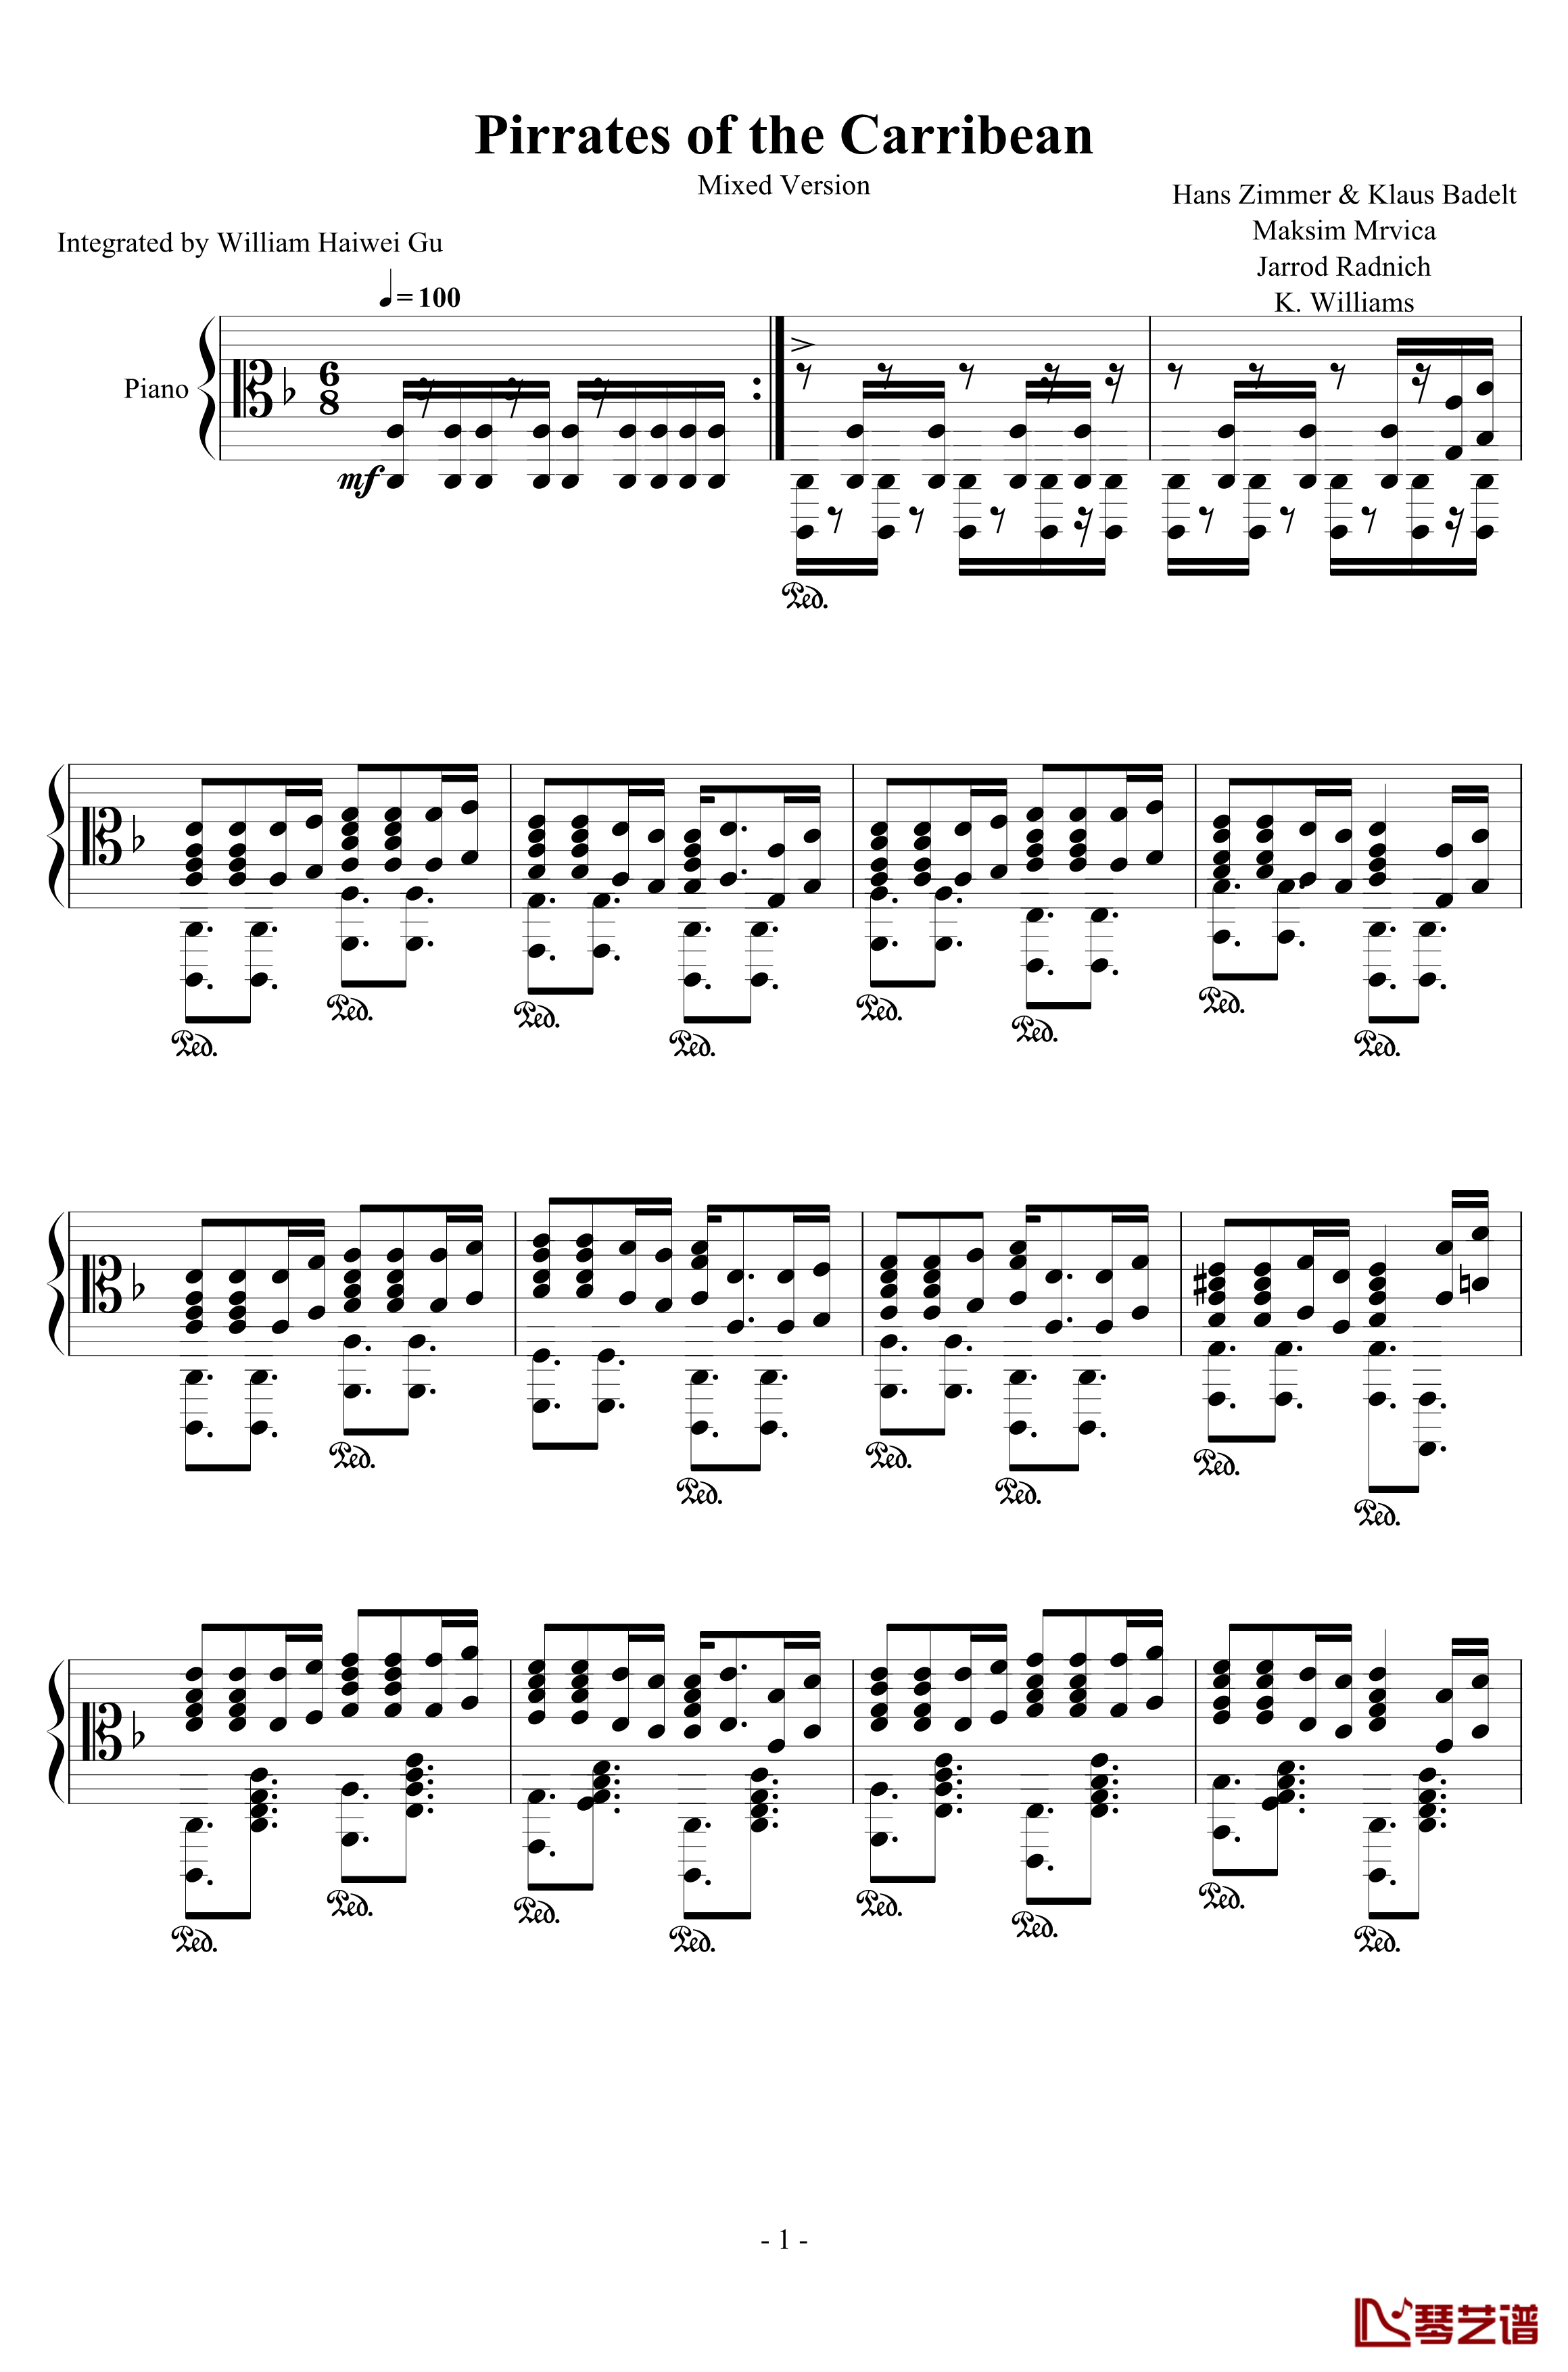 加勒比海盗钢琴谱-混合版-Hans Zimmer